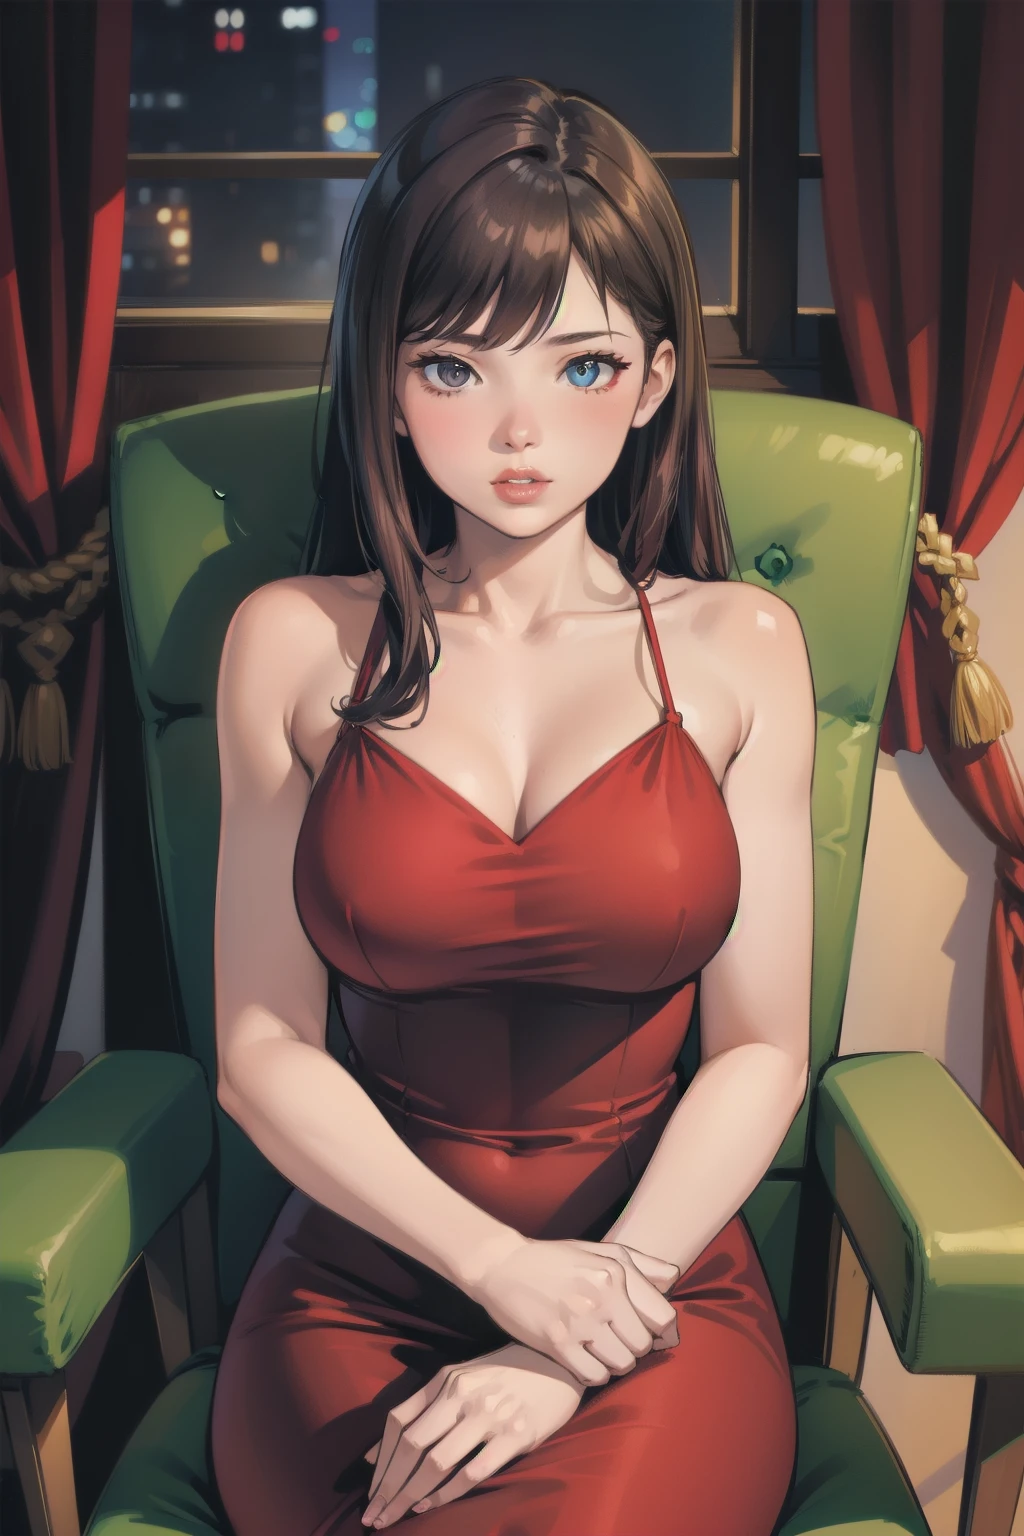 Joven mujer sexy con un vestido rojo sentada en una silla, tenue iluminación, sexy, caliente, libidinoso